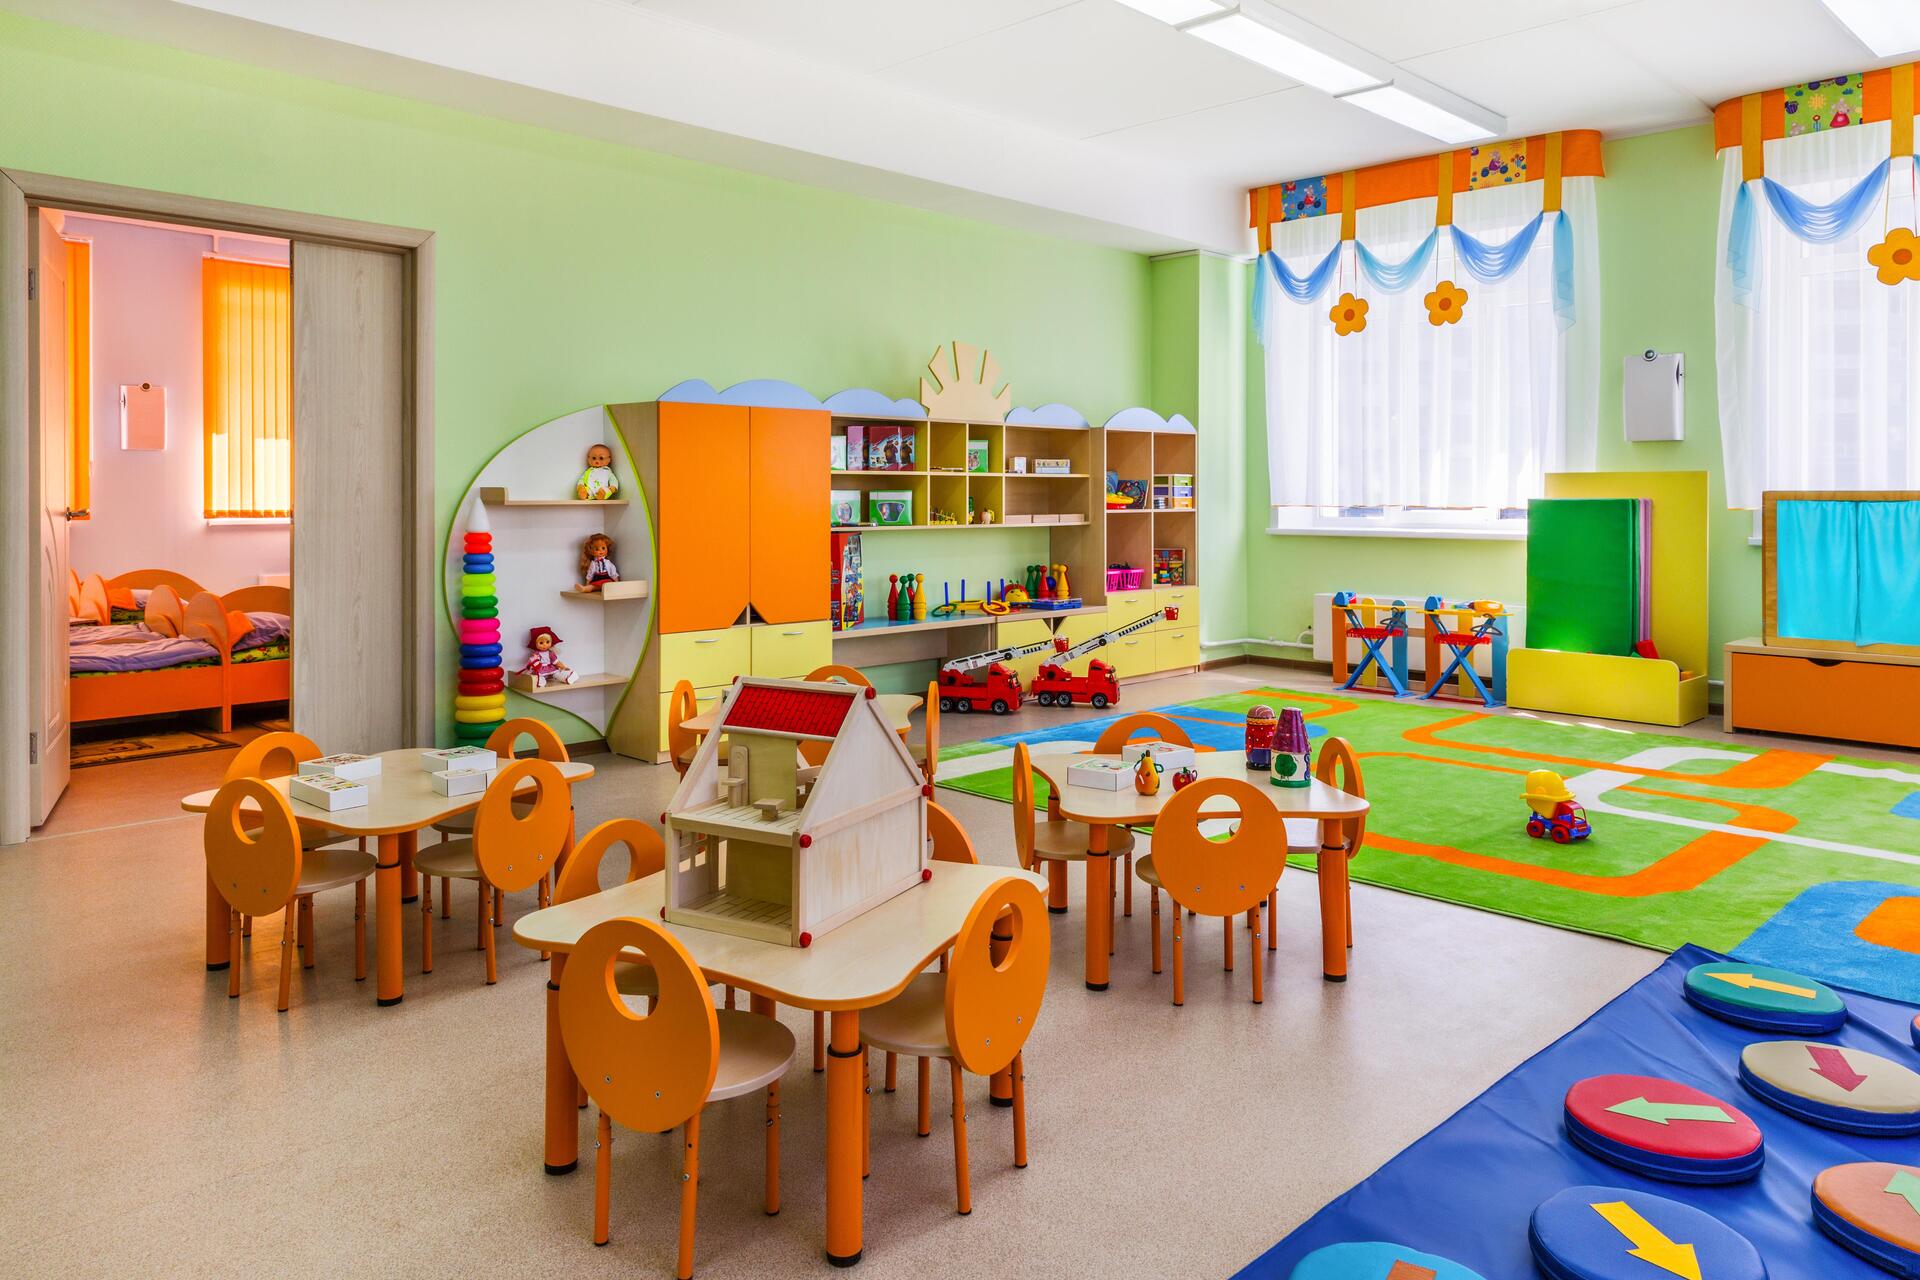 Spielzimmer eines Kindergartens mit grünen Wänden, im Vordergrund drei Tische mit Kinderstühlen.